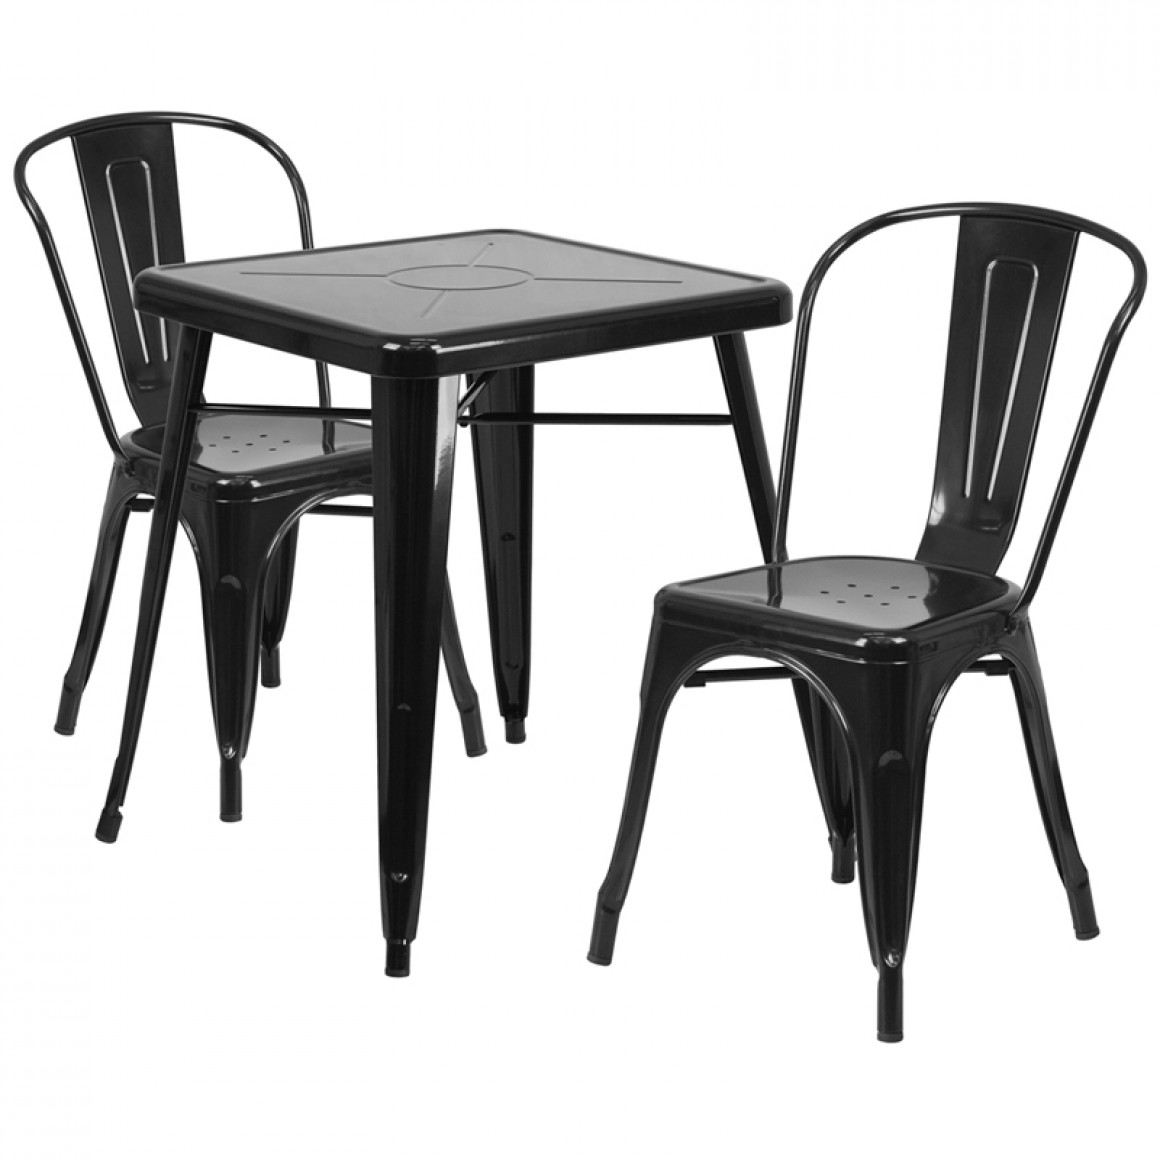 Chair: steel, black